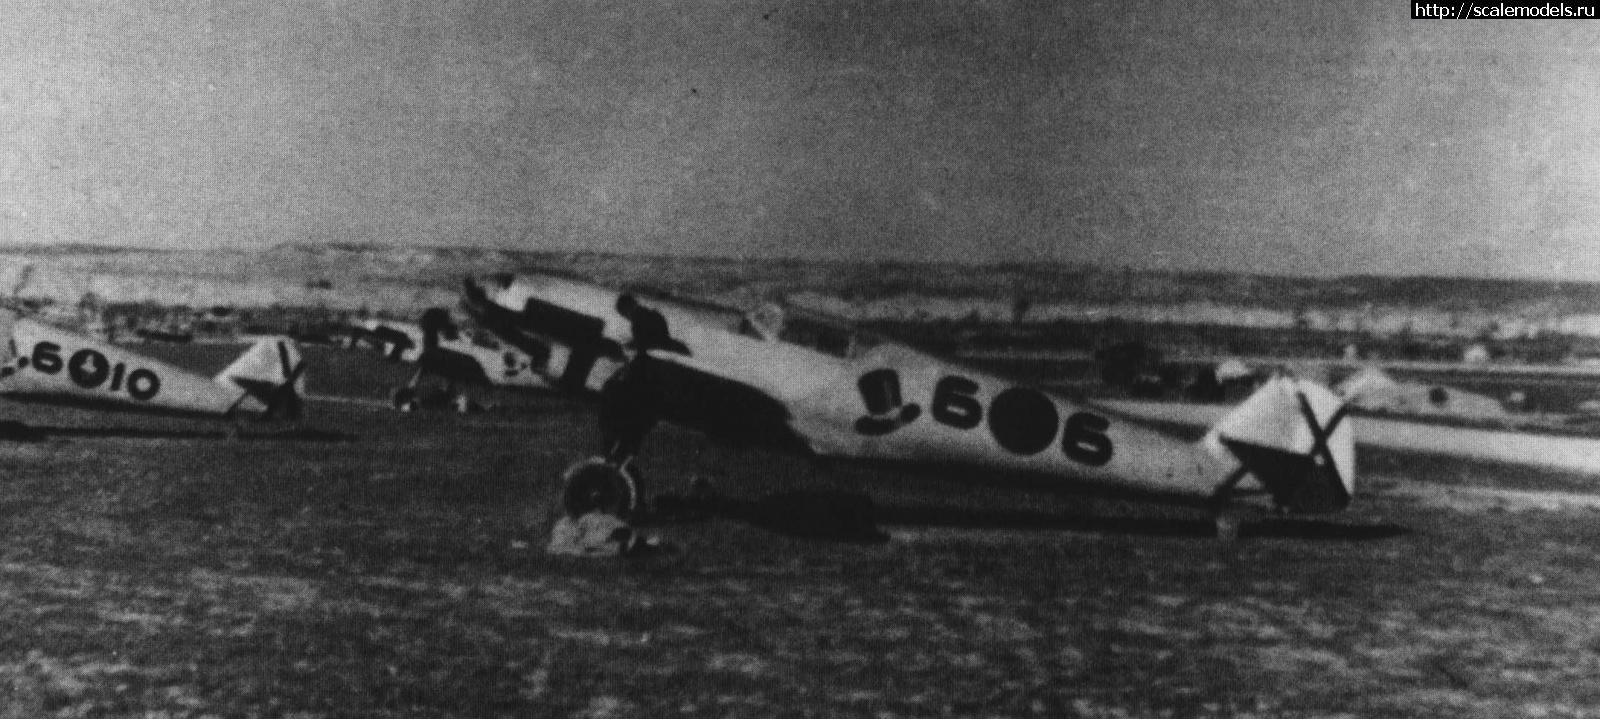 #1704683/ Bf109  Legion Condor 1936-1939.   .  